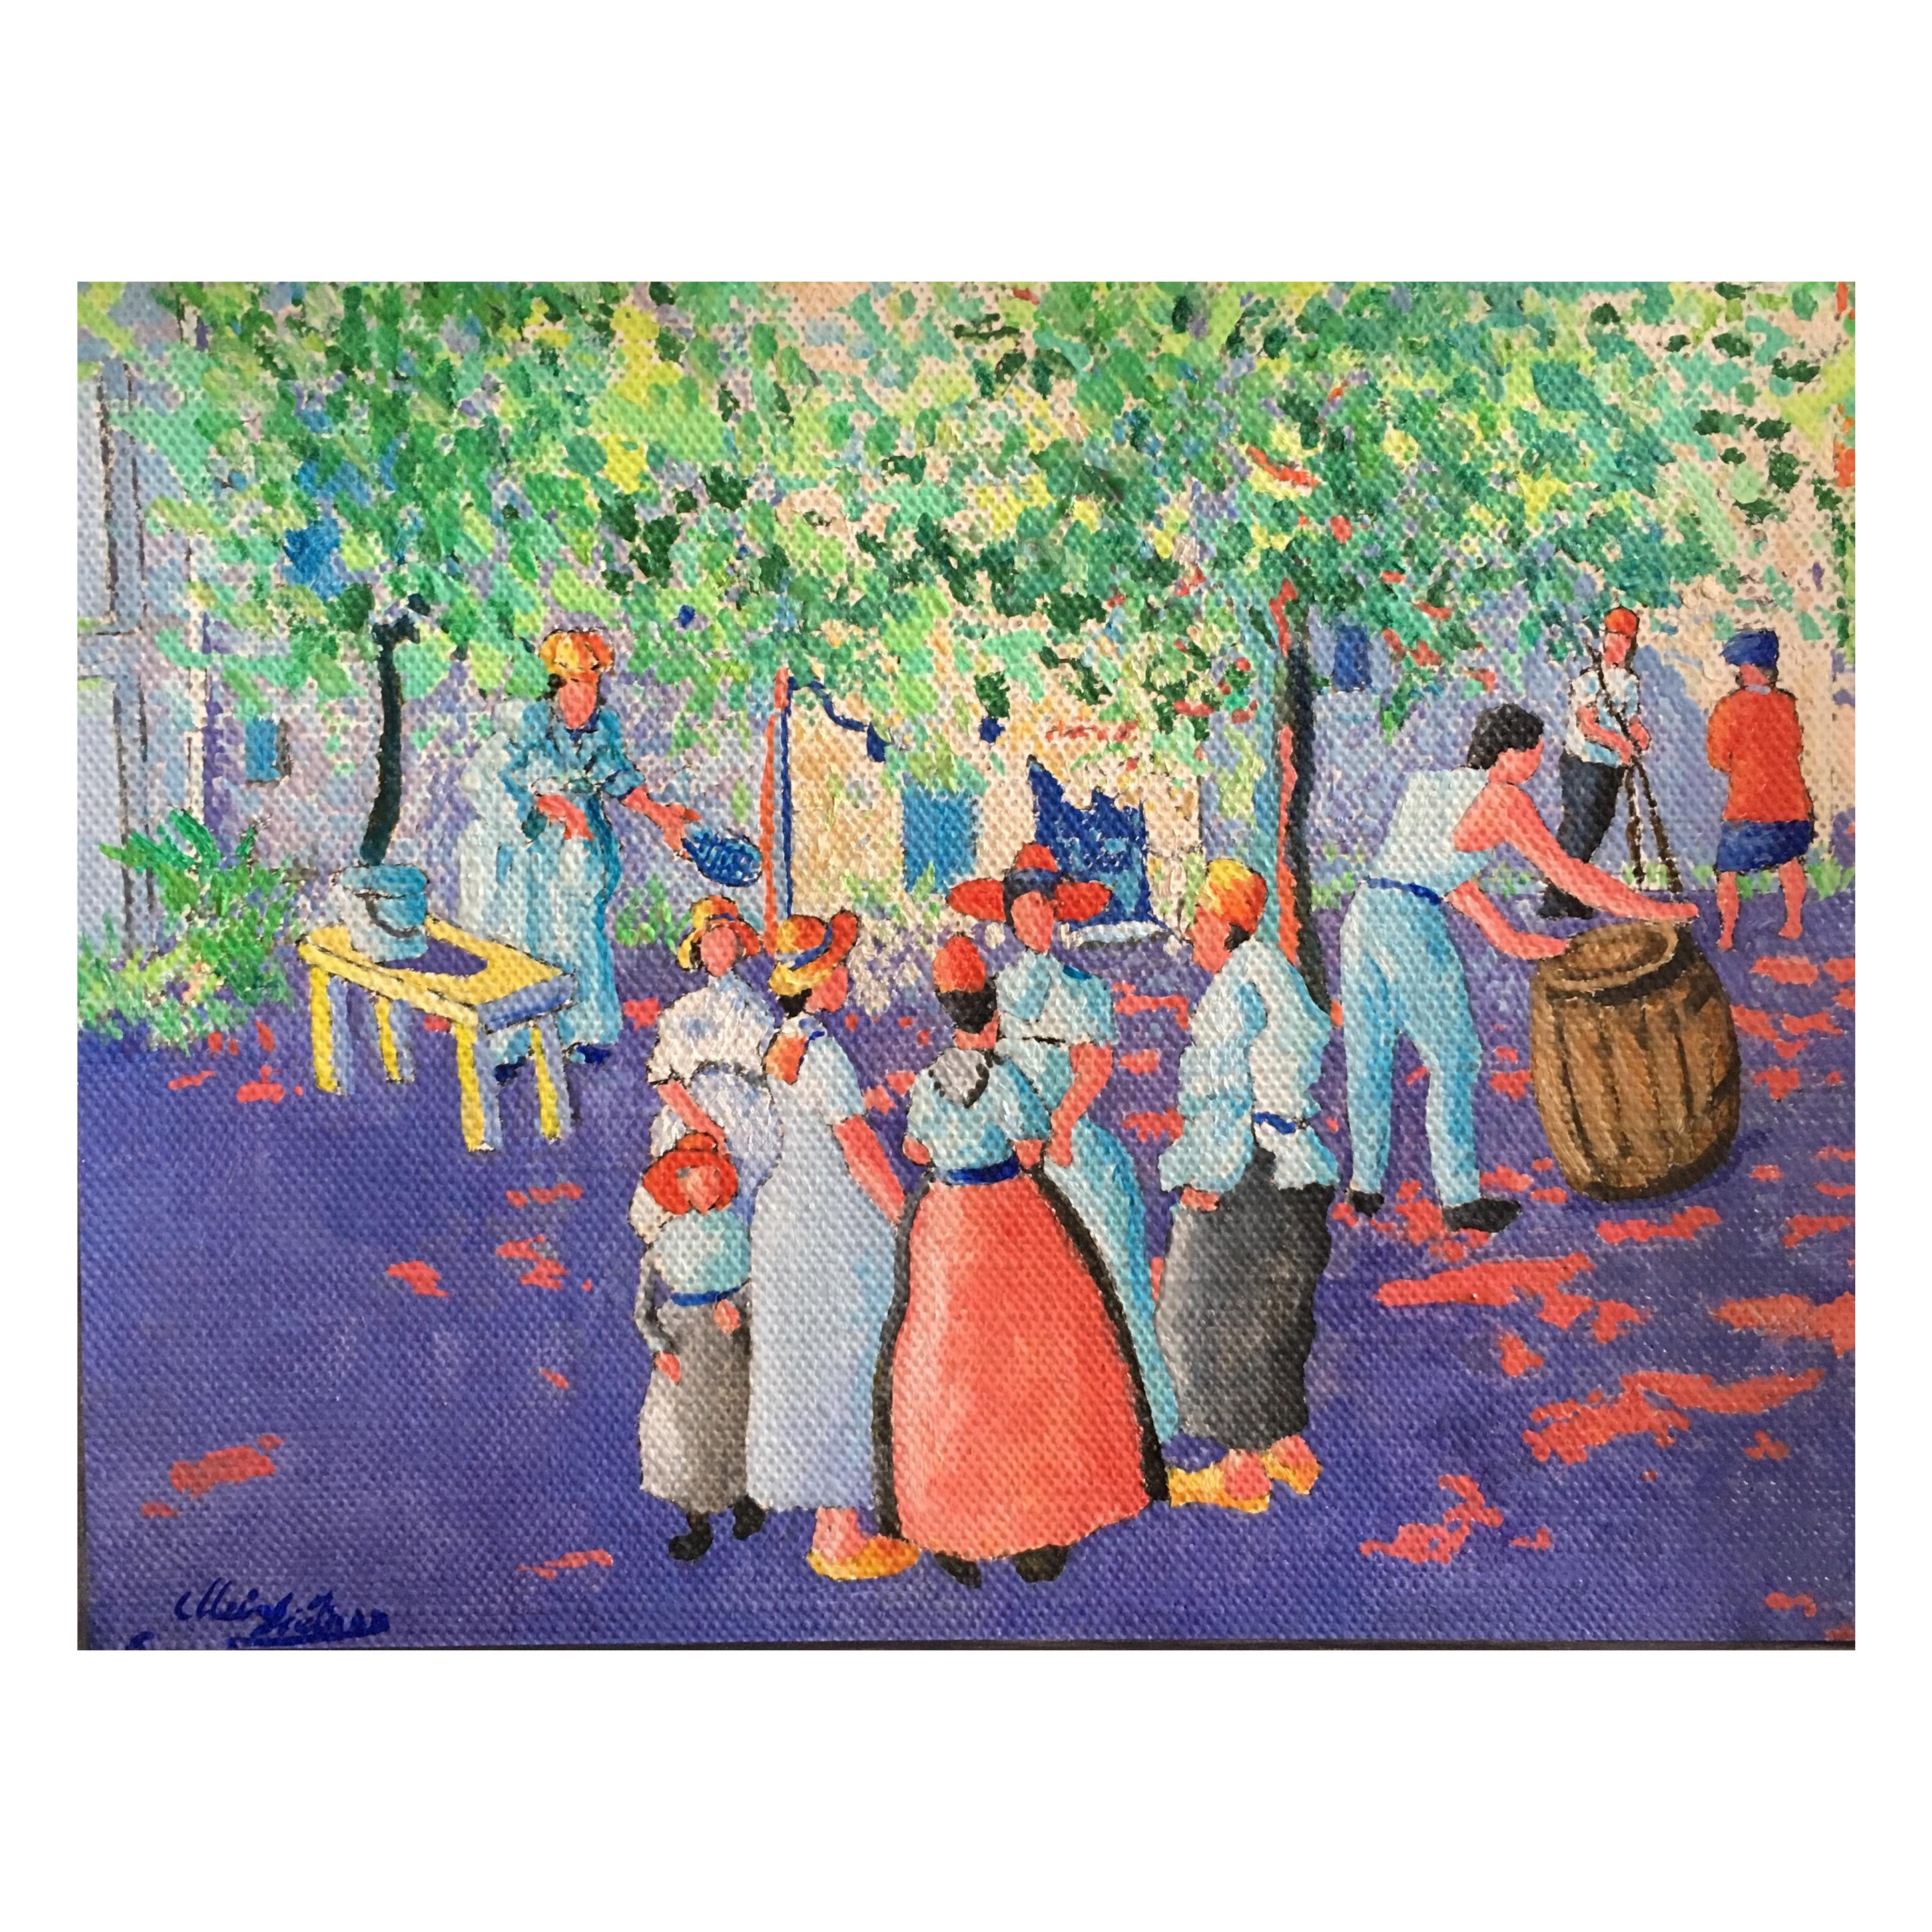 Orange Fruit Picking Impressionist Landscape Original Oil Painting, Signed